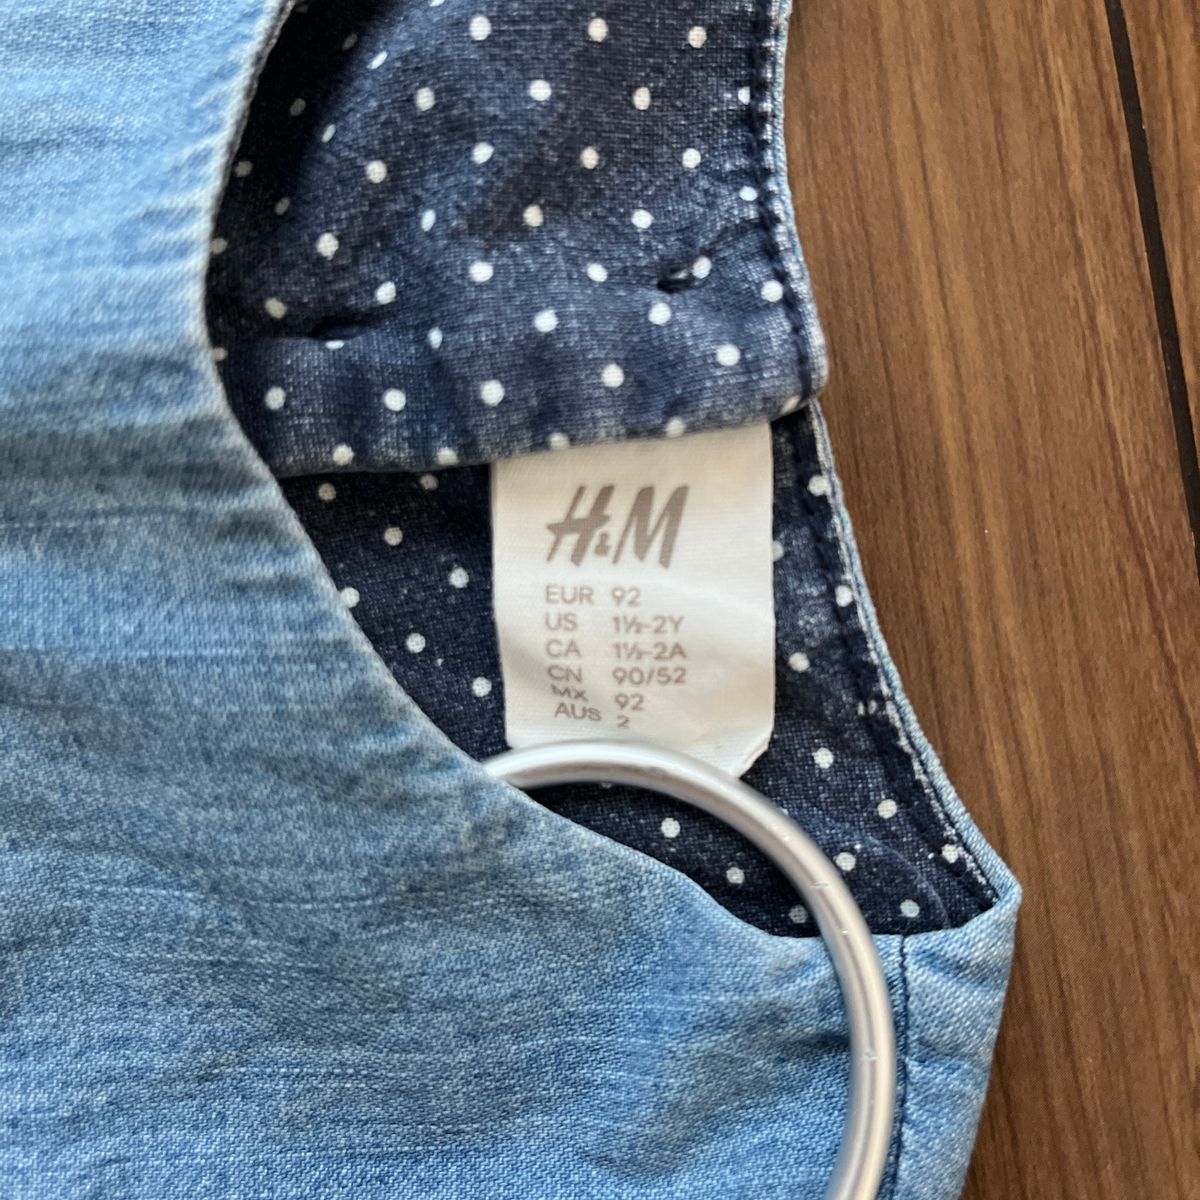 H&M エイチアンドエム　90  ジャンパースカート　ワンピース　ブルー ワンピース